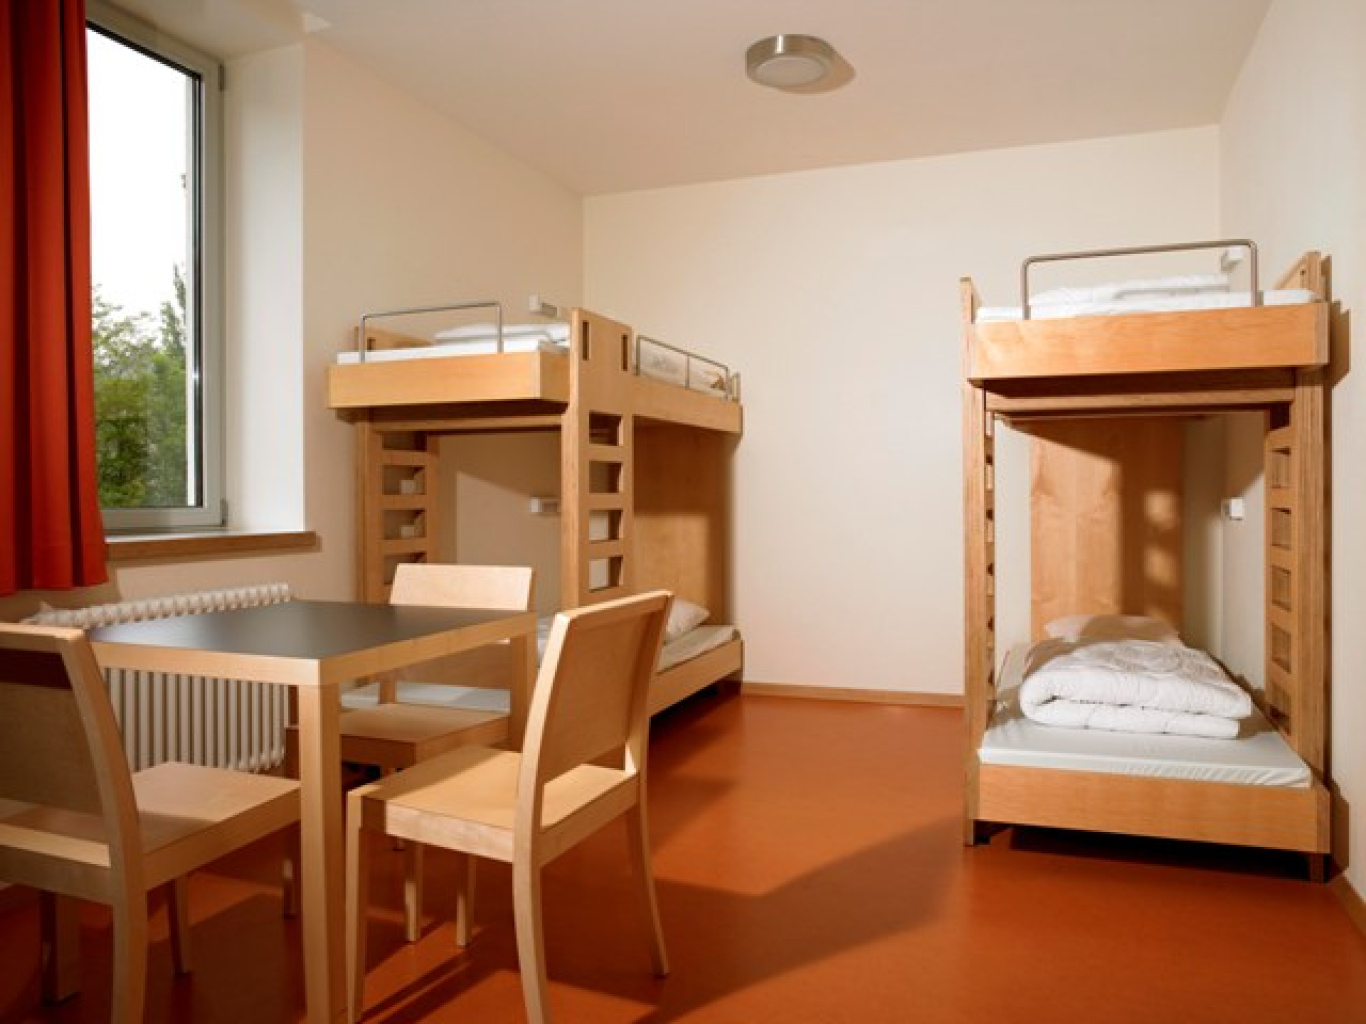 Hostel barato Luxemburgo